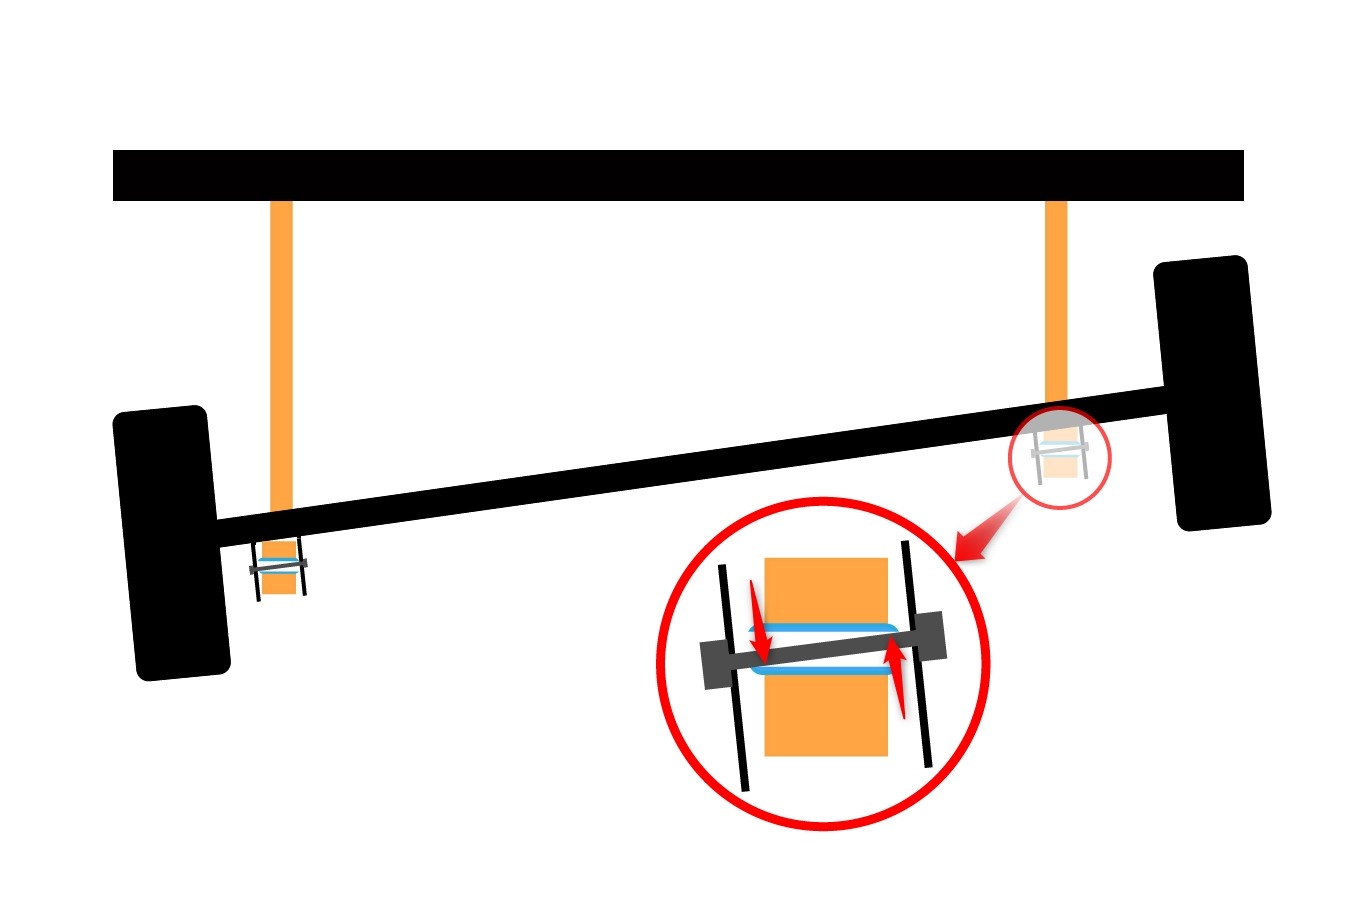 Achskonzepte bei Geländewagen – Teil 2 – Längslenker und Panhardstab - Bei der Verschränkung muss die Achse gegen vier Gummibuchsen arbeiten. Hier schematisch dargestellt.